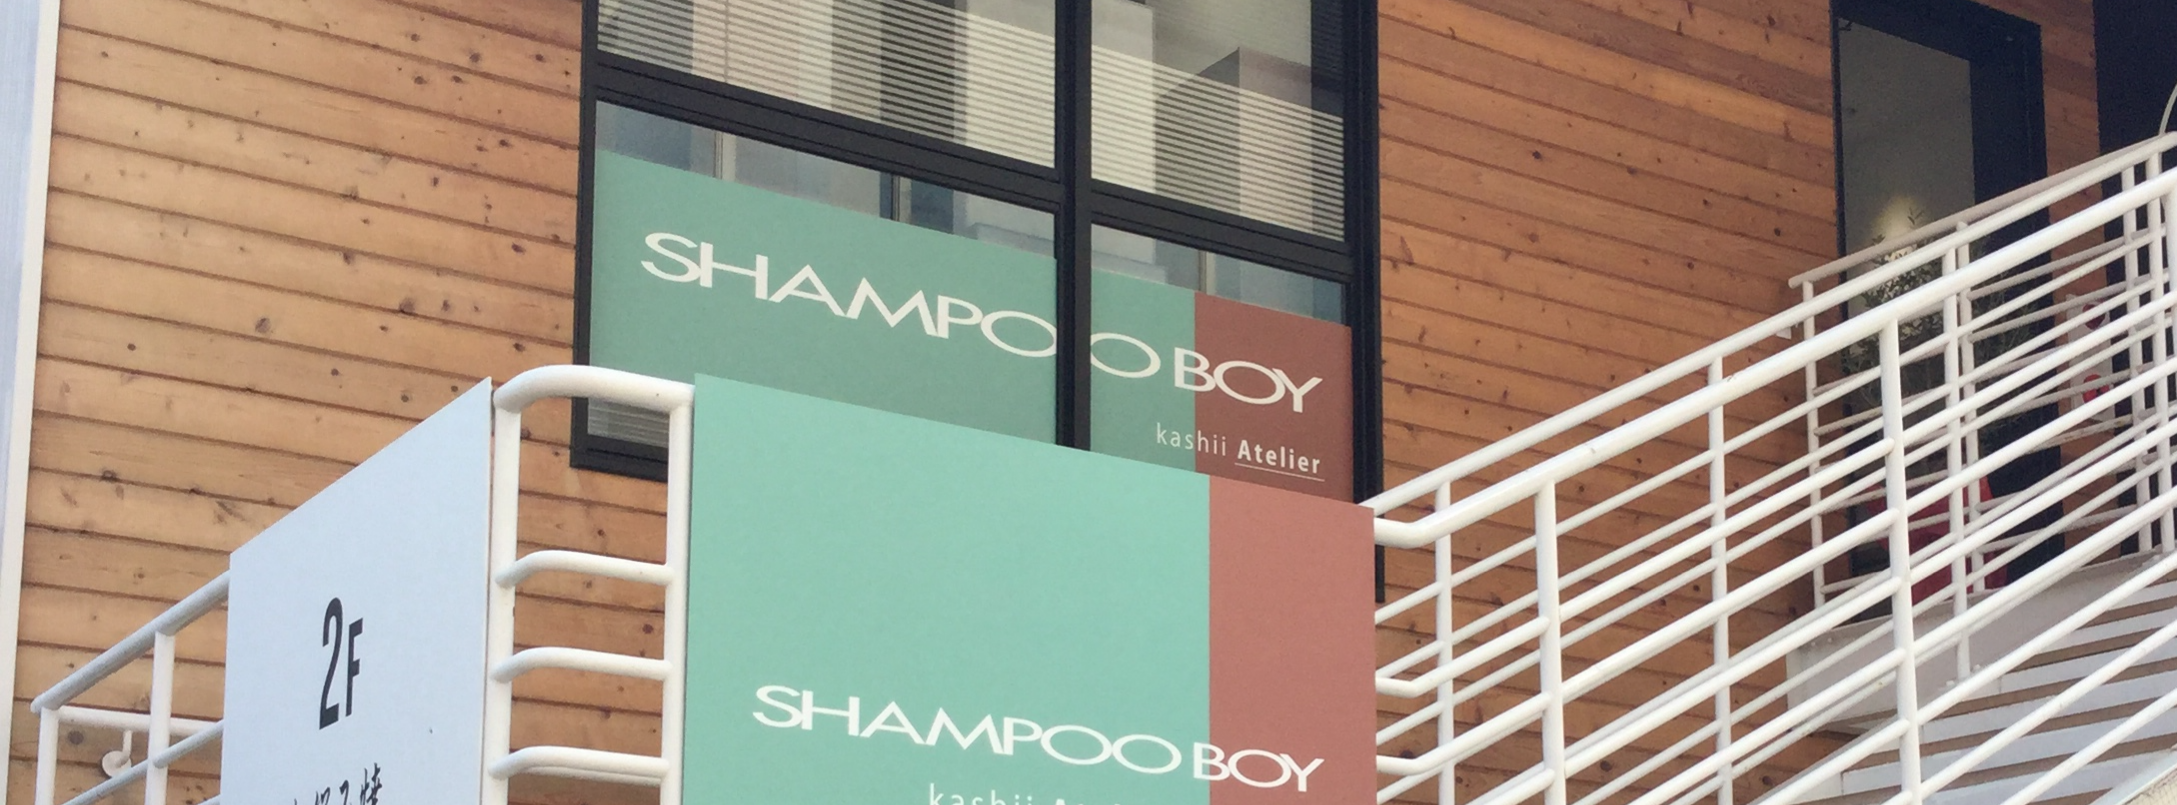 福岡 香椎の美容院 美容室 Shampoo Boy Kashii 九州エリア最大級の美容院 美容室 Shampoo Boy